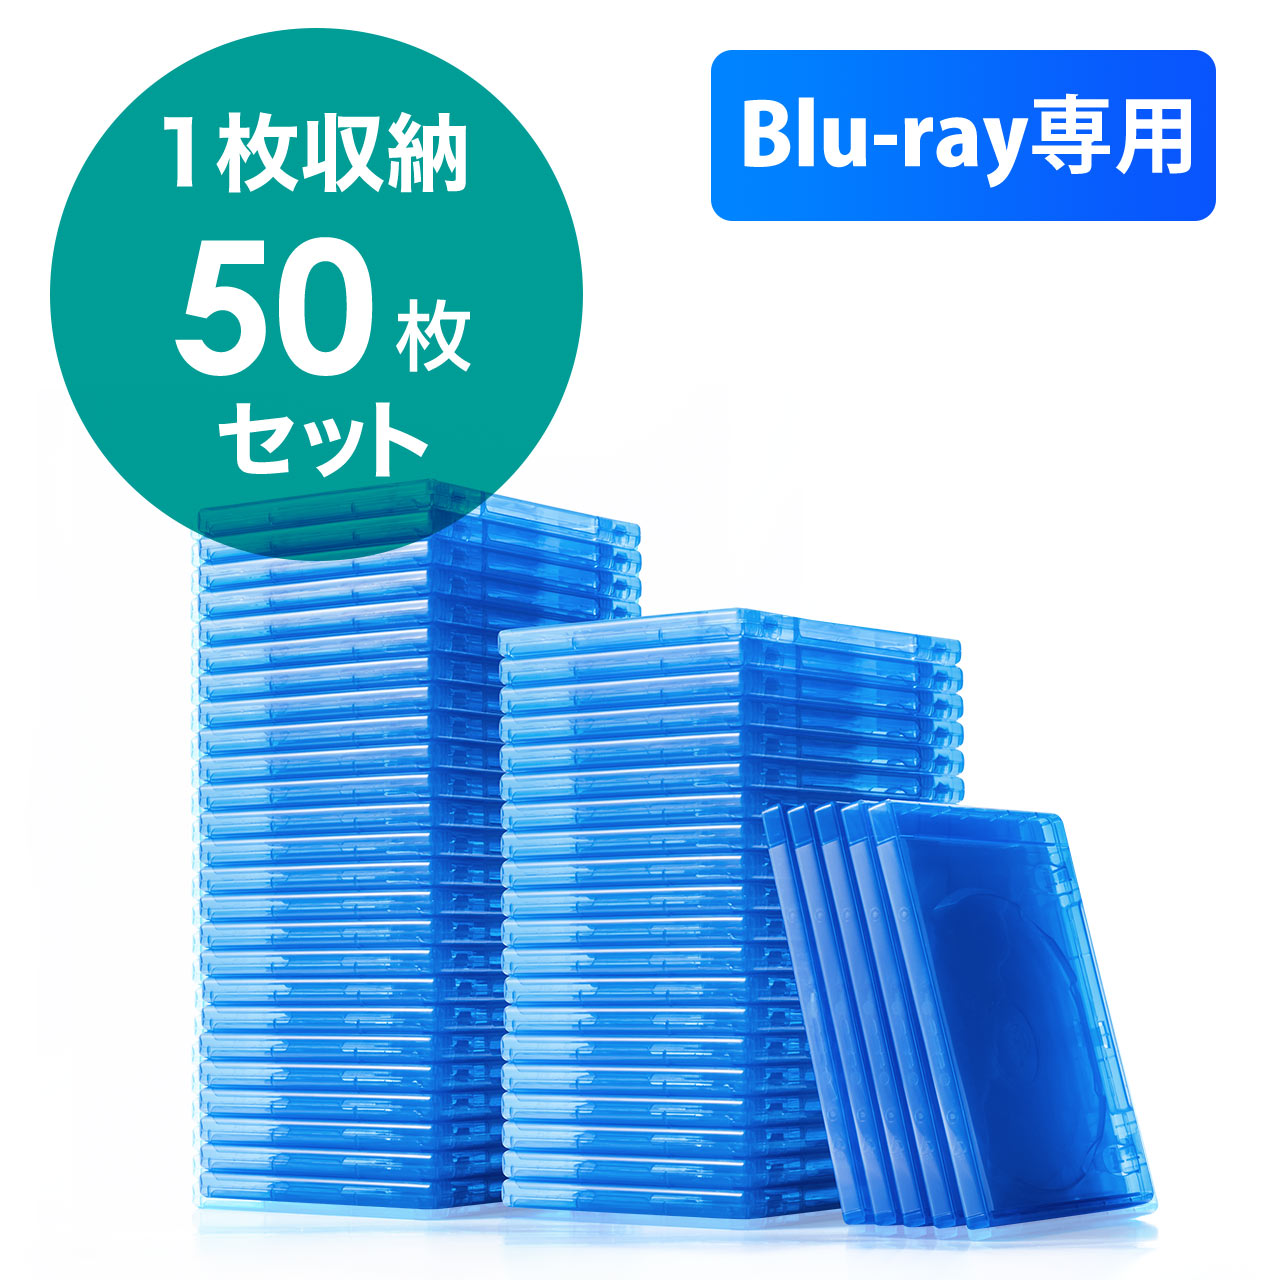 ブルーレイディスクケース 標準サイズ Blu Ray 1枚収納 50枚セット 0 Fcd055 50の販売商品 通販ならサンワダイレクト